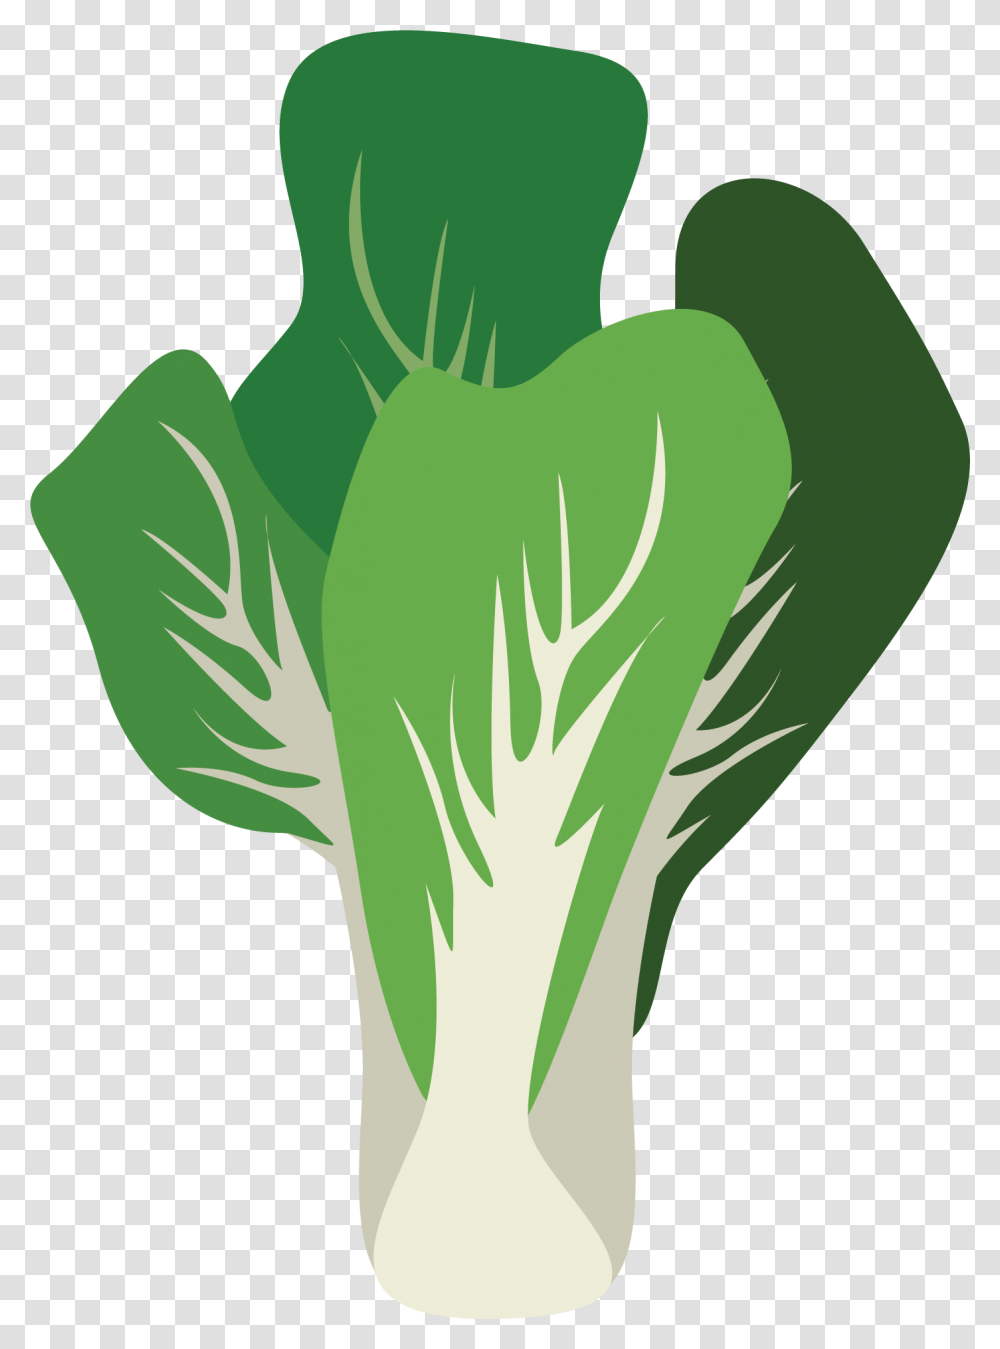 Leaf Vegetable, Plant, Food, Produce, Leek Transparent Png